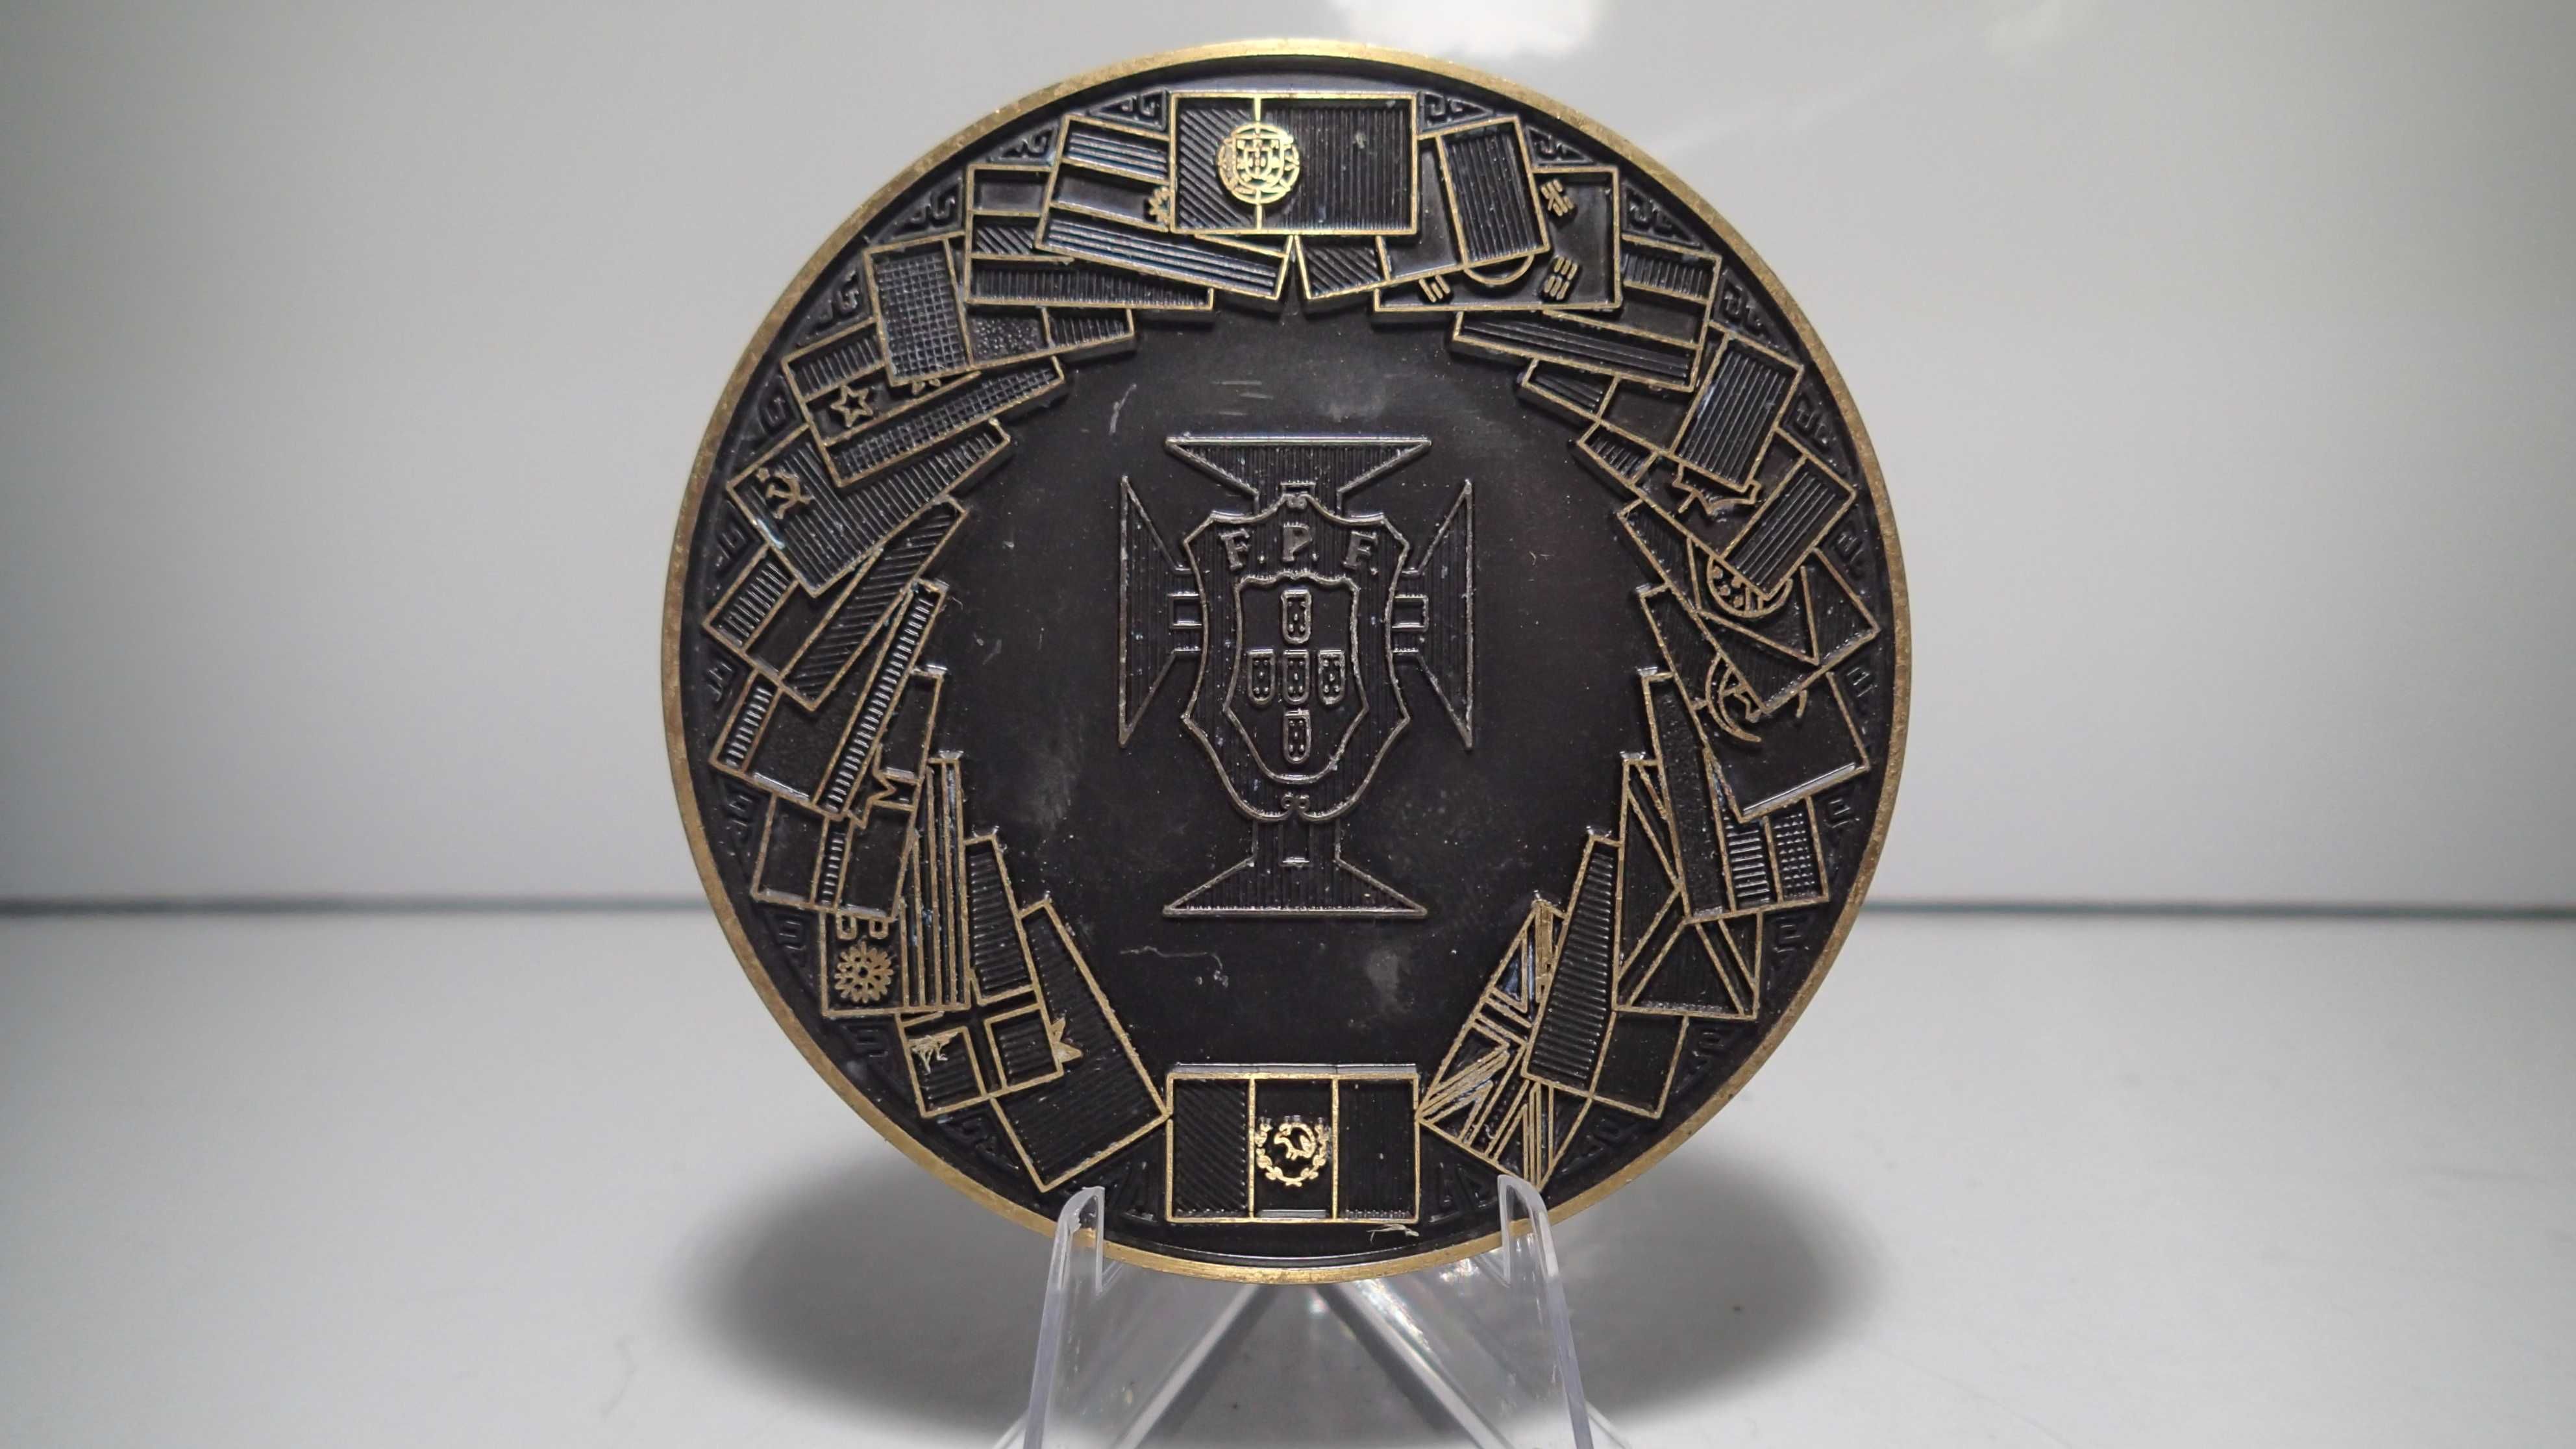 Medalha de Bronze do Campeonato Mundial de Futebol, Mexico 86